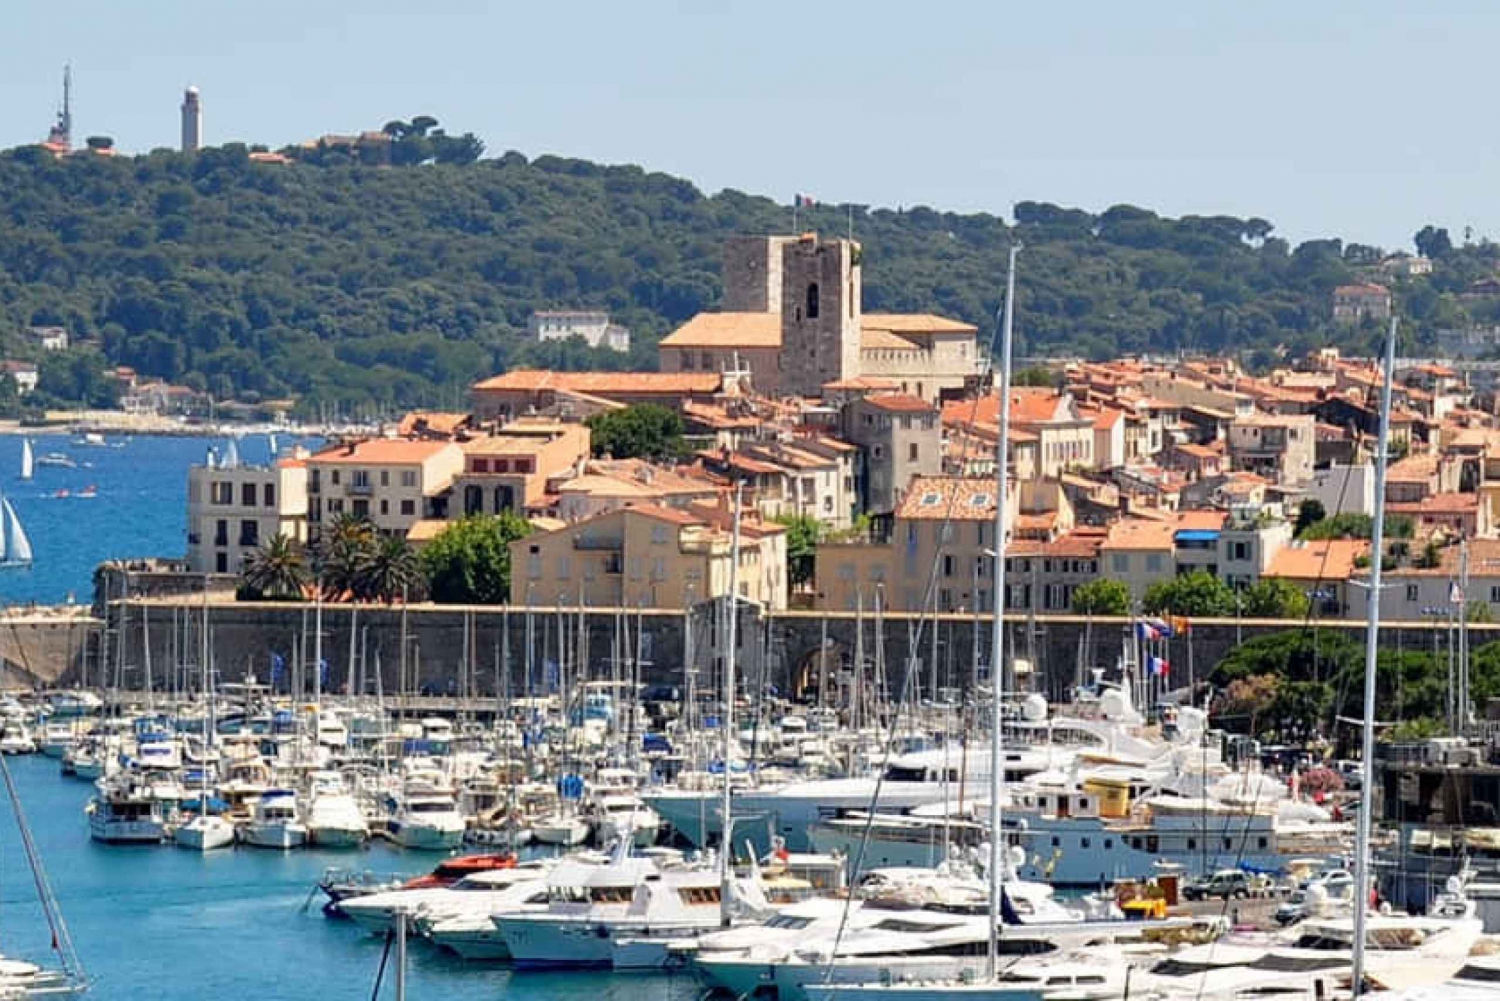 French Riviera Tour: Cannes, Antibes & Saint-Paul de Vence